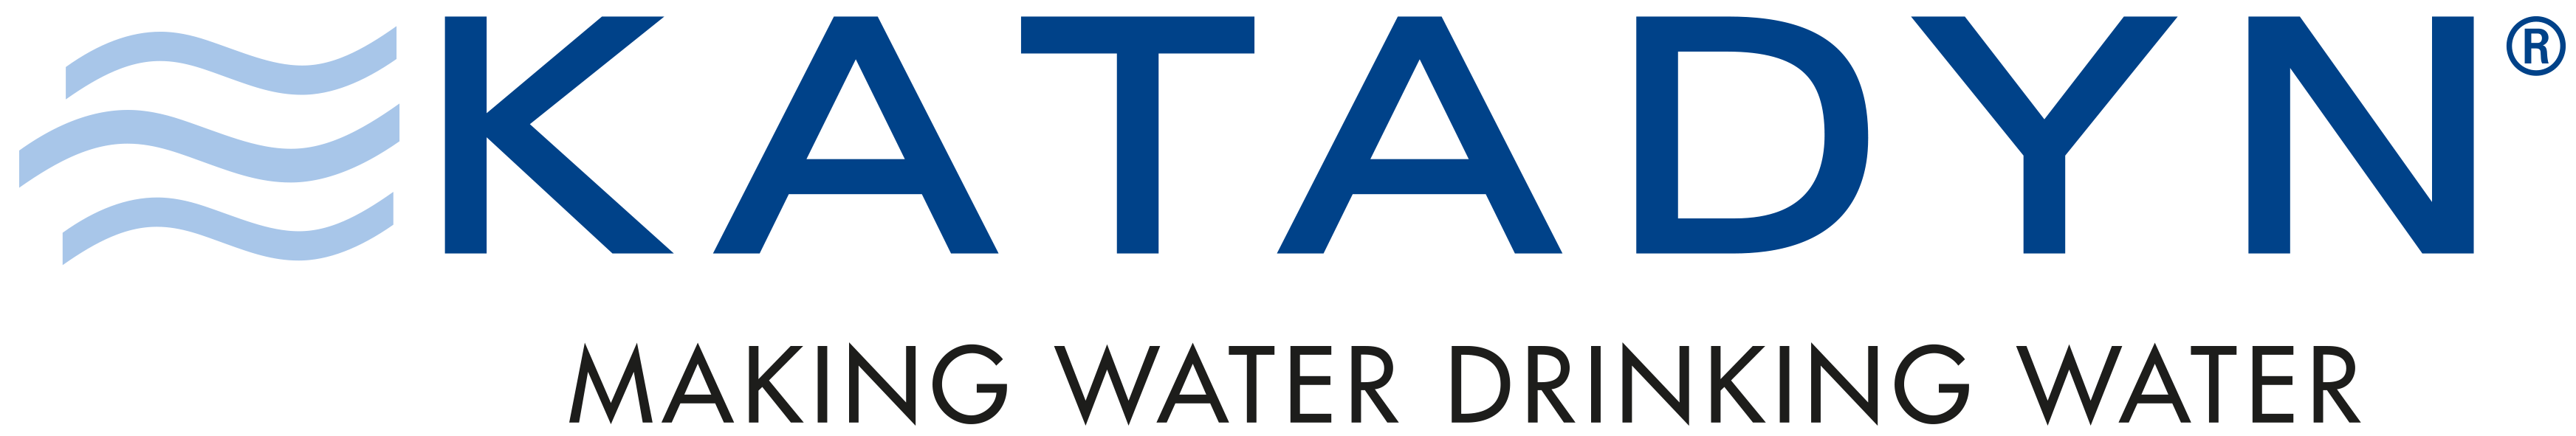 katadyn making water logo